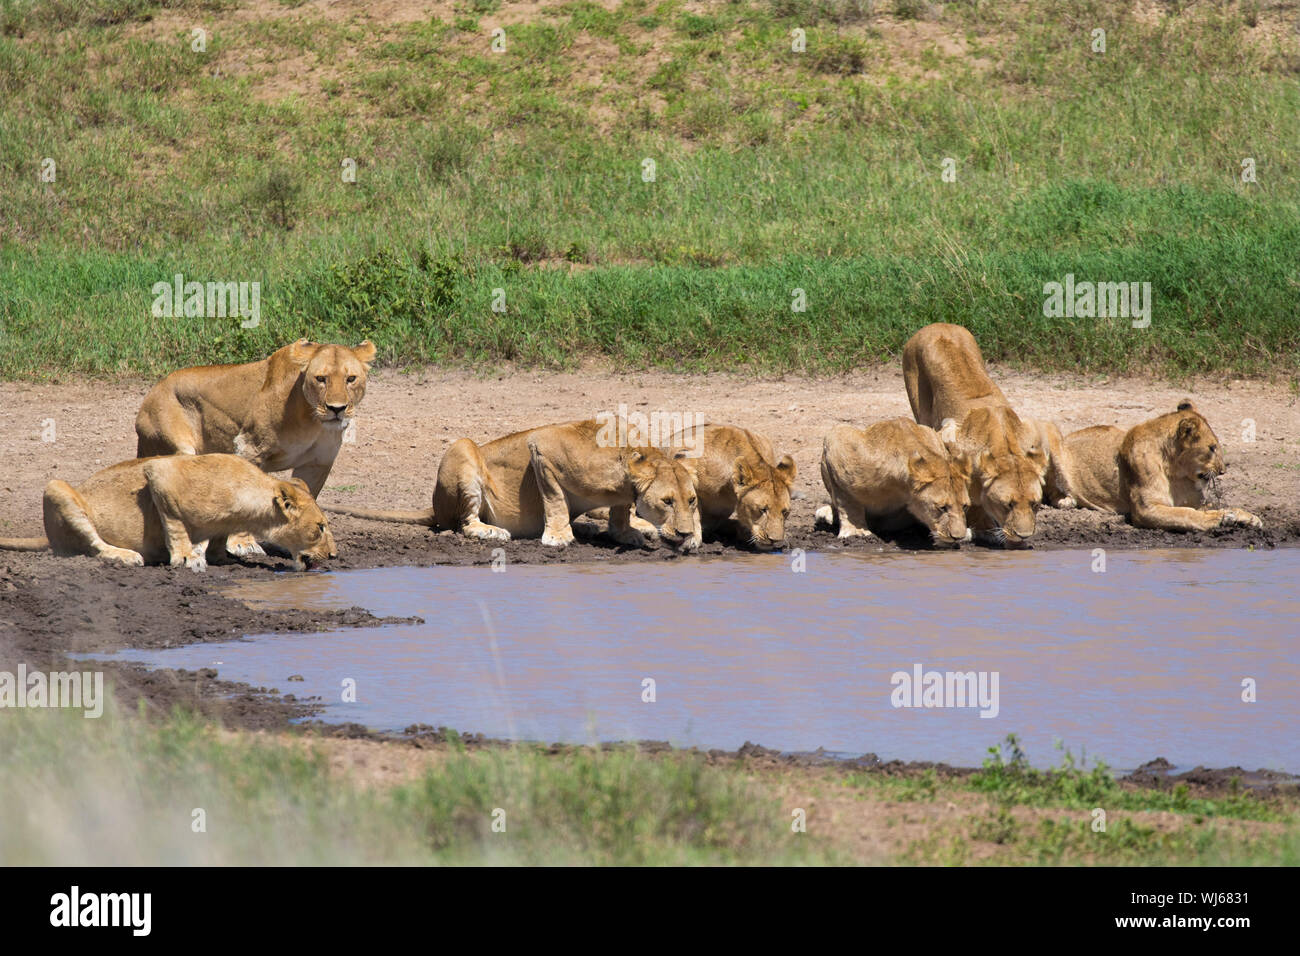 L'African Lion (Panthera leo) fierté de boire à points d'eau, le Parc National du Serengeti, Tanzanie. Banque D'Images